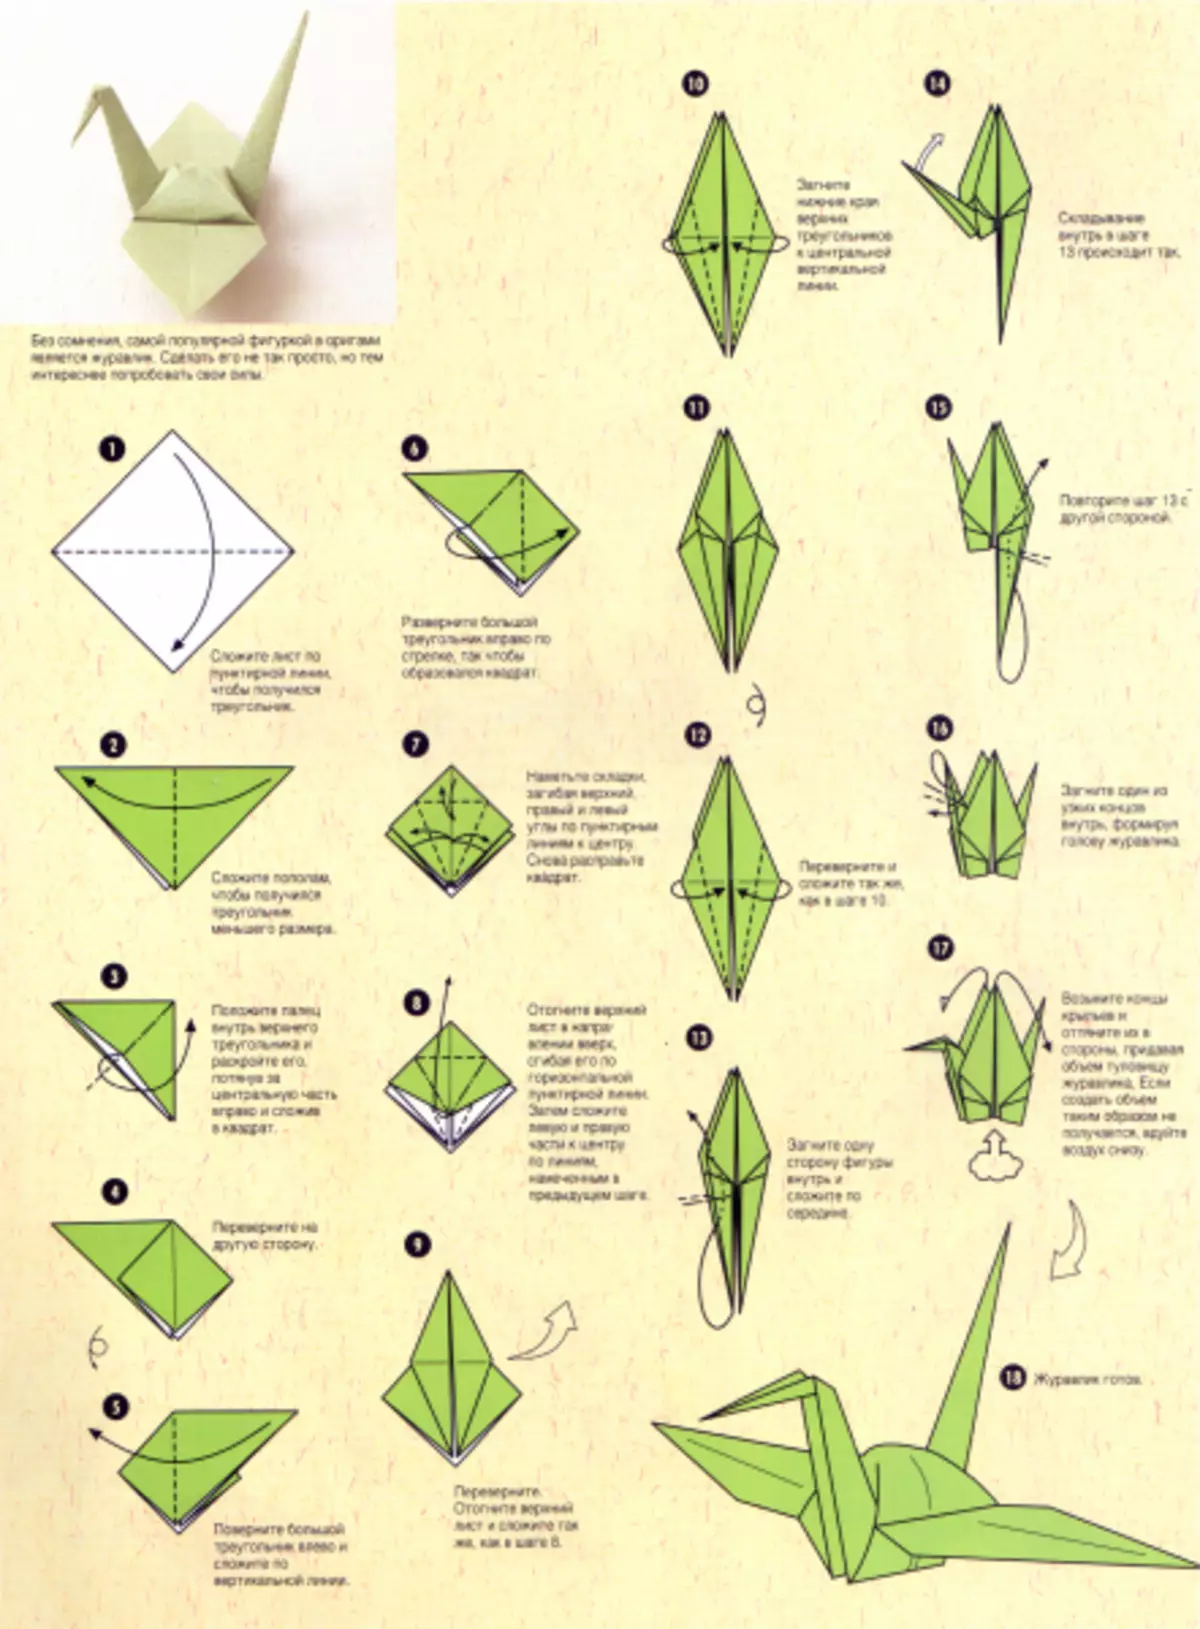 Zvířata origami z papíru podle režimů start-up: schémata a video v ruštině